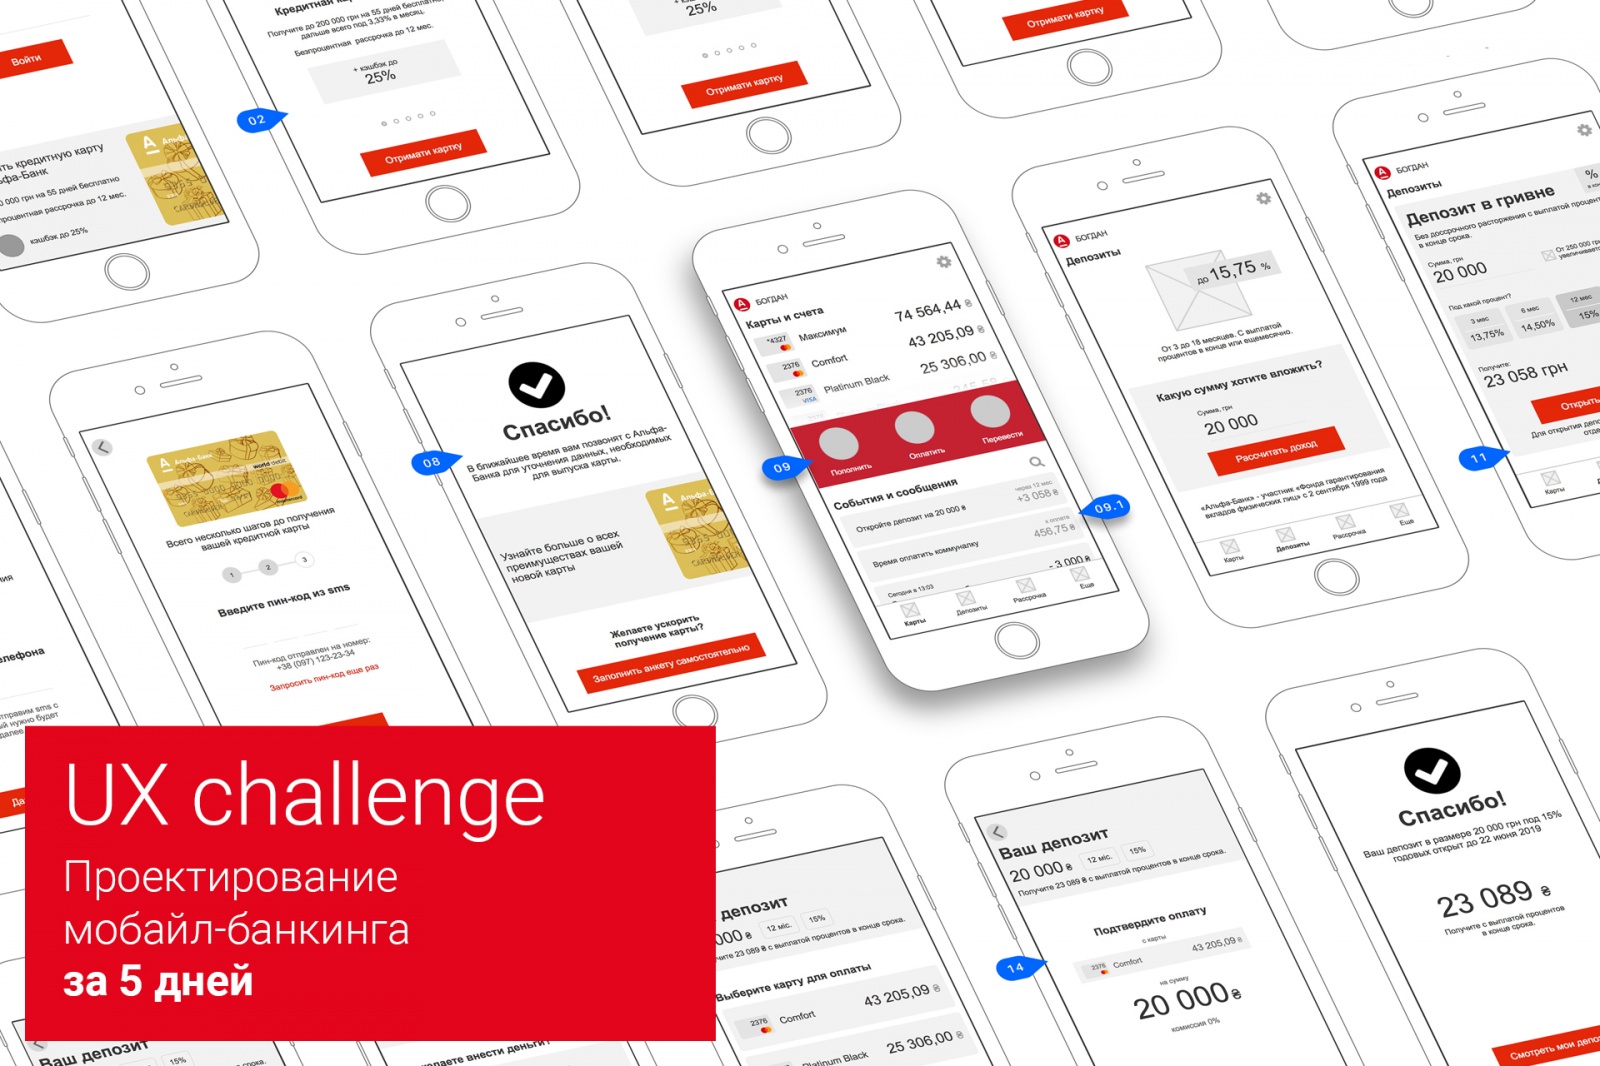 UX-challenge: проектирование приложения мобильного банка за 5 дней - 1